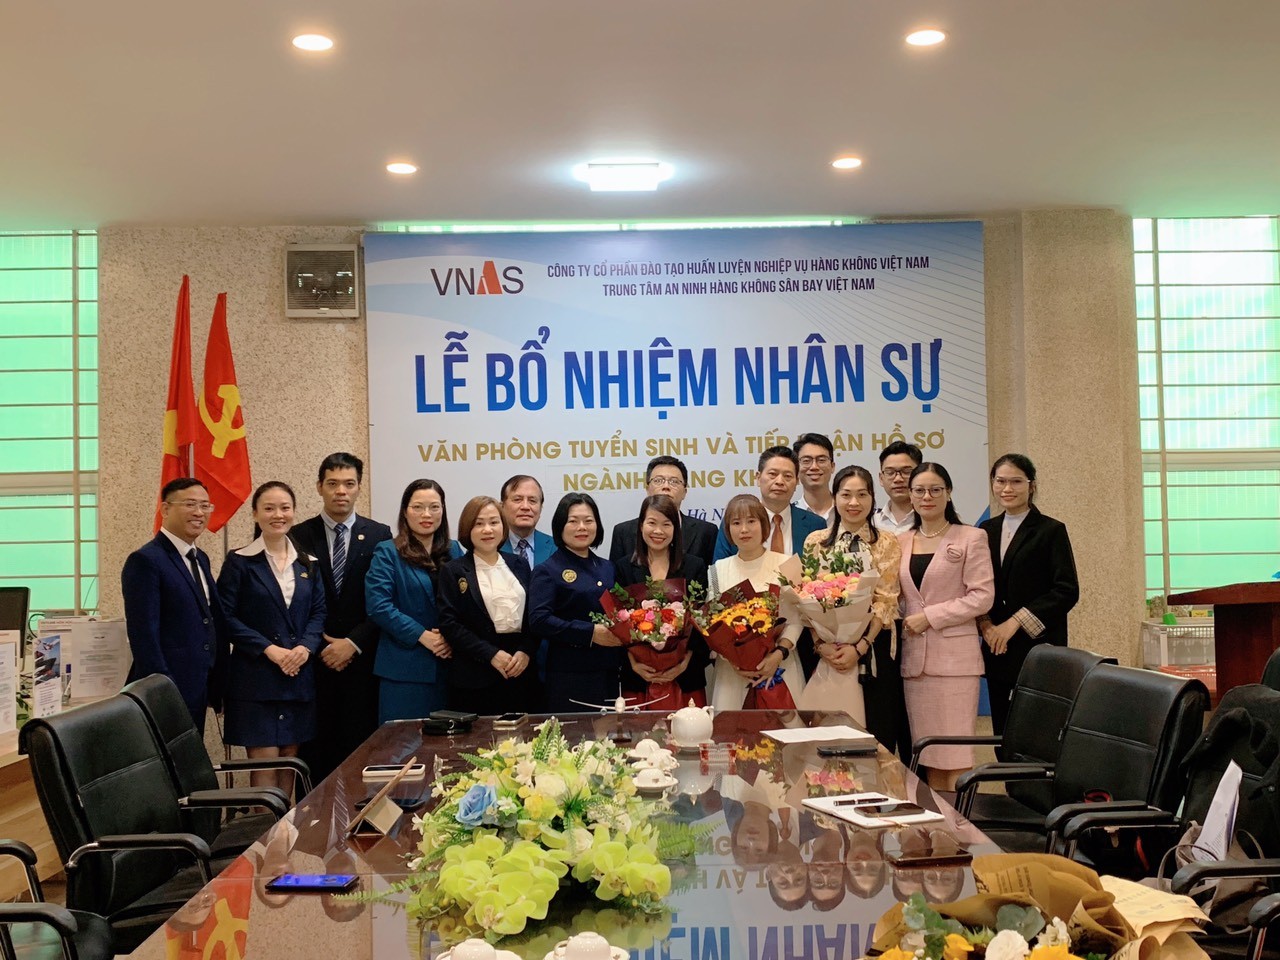 VNAS-Trung tâm An ninh hàng không Sân bay Việt Nam tổ chức Lễ bổ nhiệm nhân sự